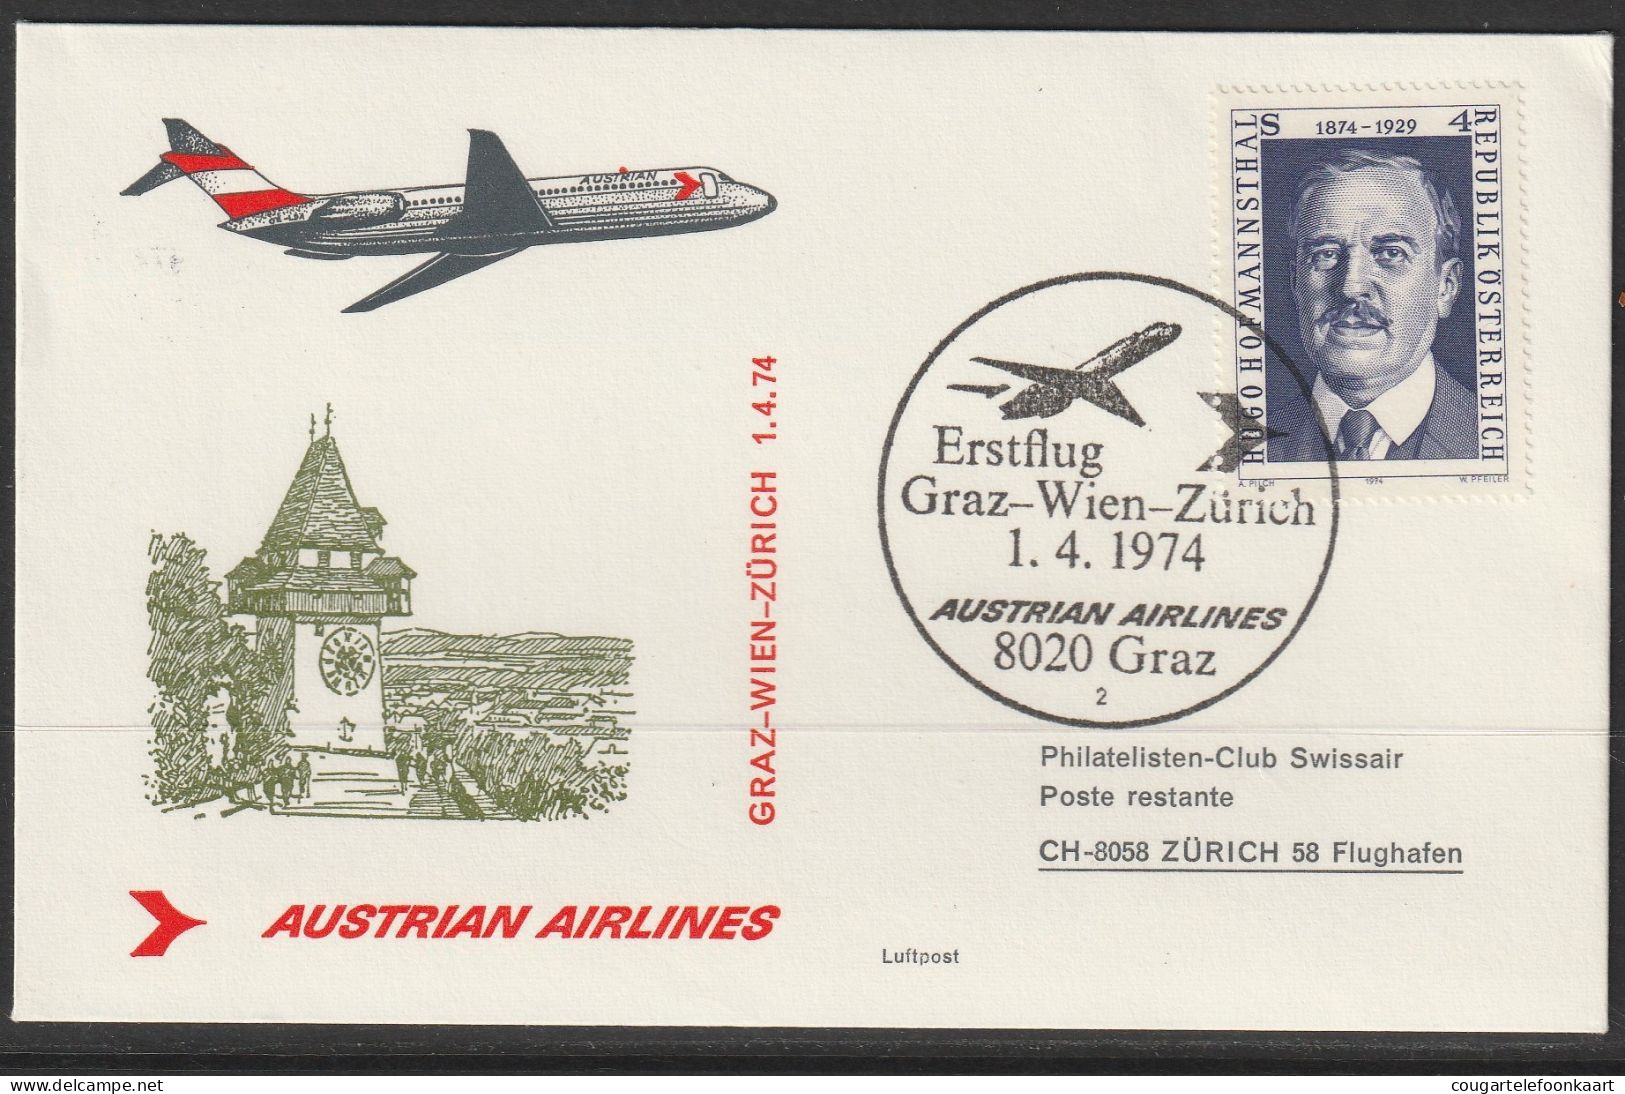 1974, Austrian Airlines, Erstflug, Graz-Zürich - First Flight Covers